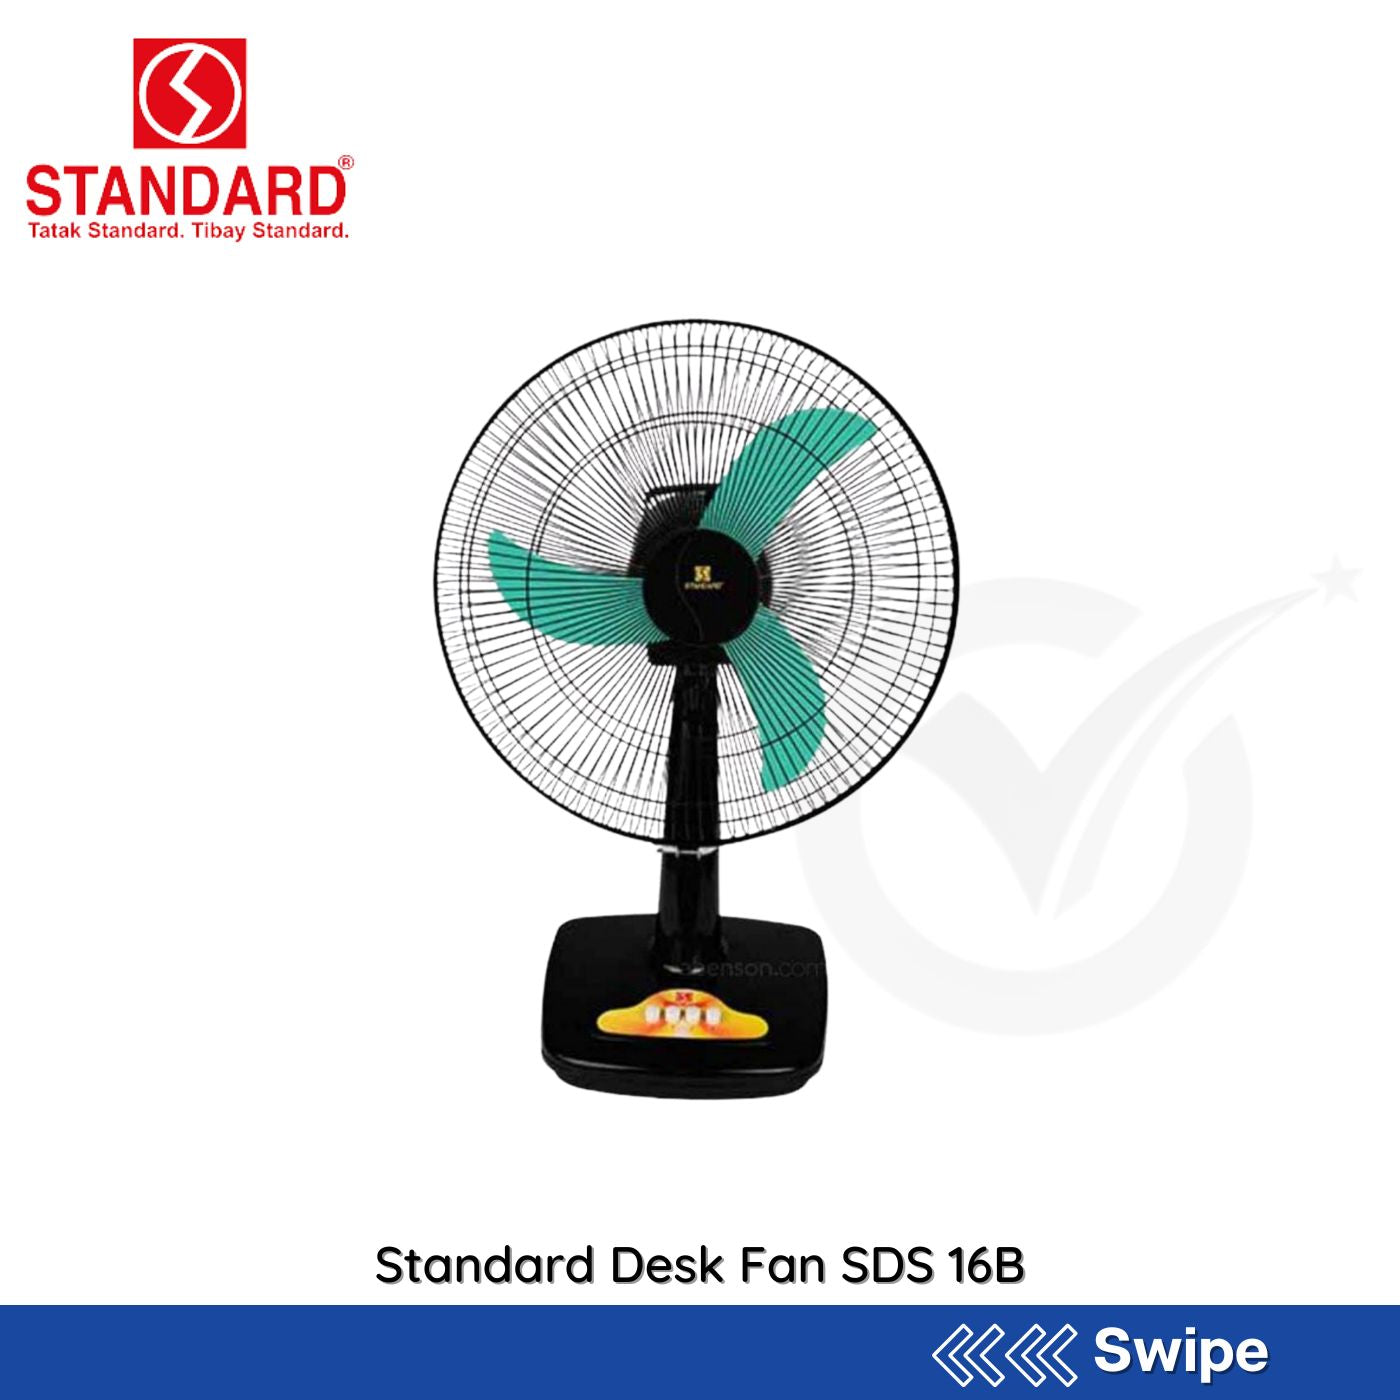 Standard Desk Fan SDS 16B